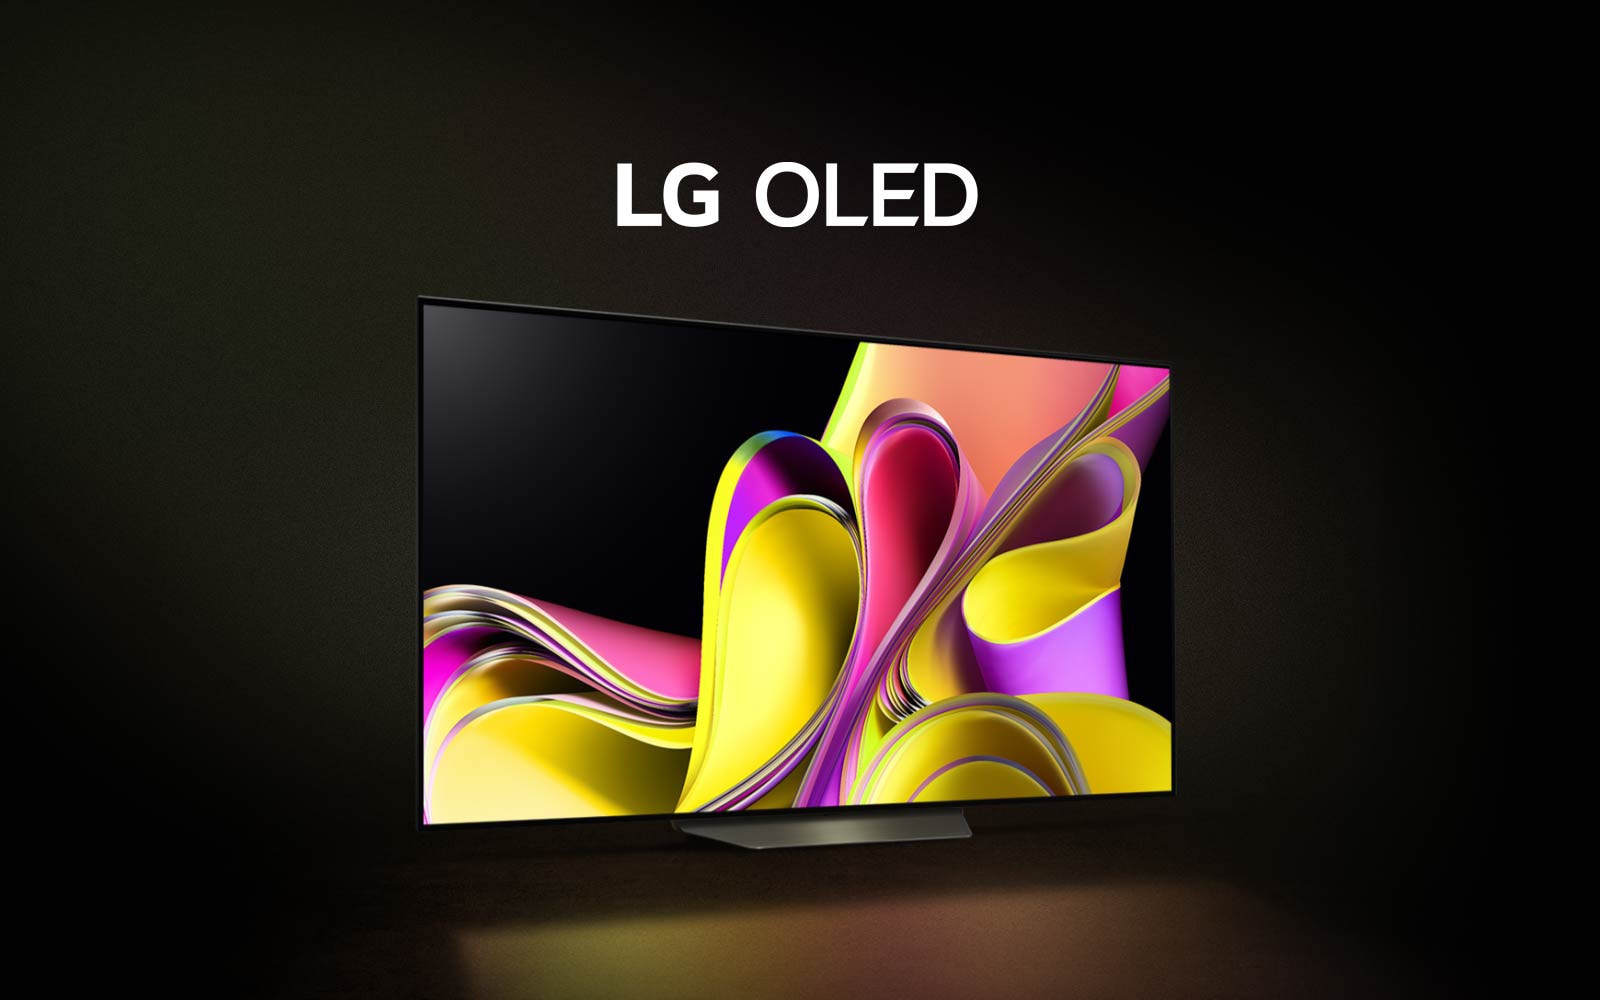 Megnyílik egy videó fekete háttérrel, majd fokozatosan megjelenik az LG OLED B3, a képernyőn egy színes, absztrakt művészeti alkotással. A tévé a helyére kerül, és fehérrel megjelenik rajta az LG OLED felirat.